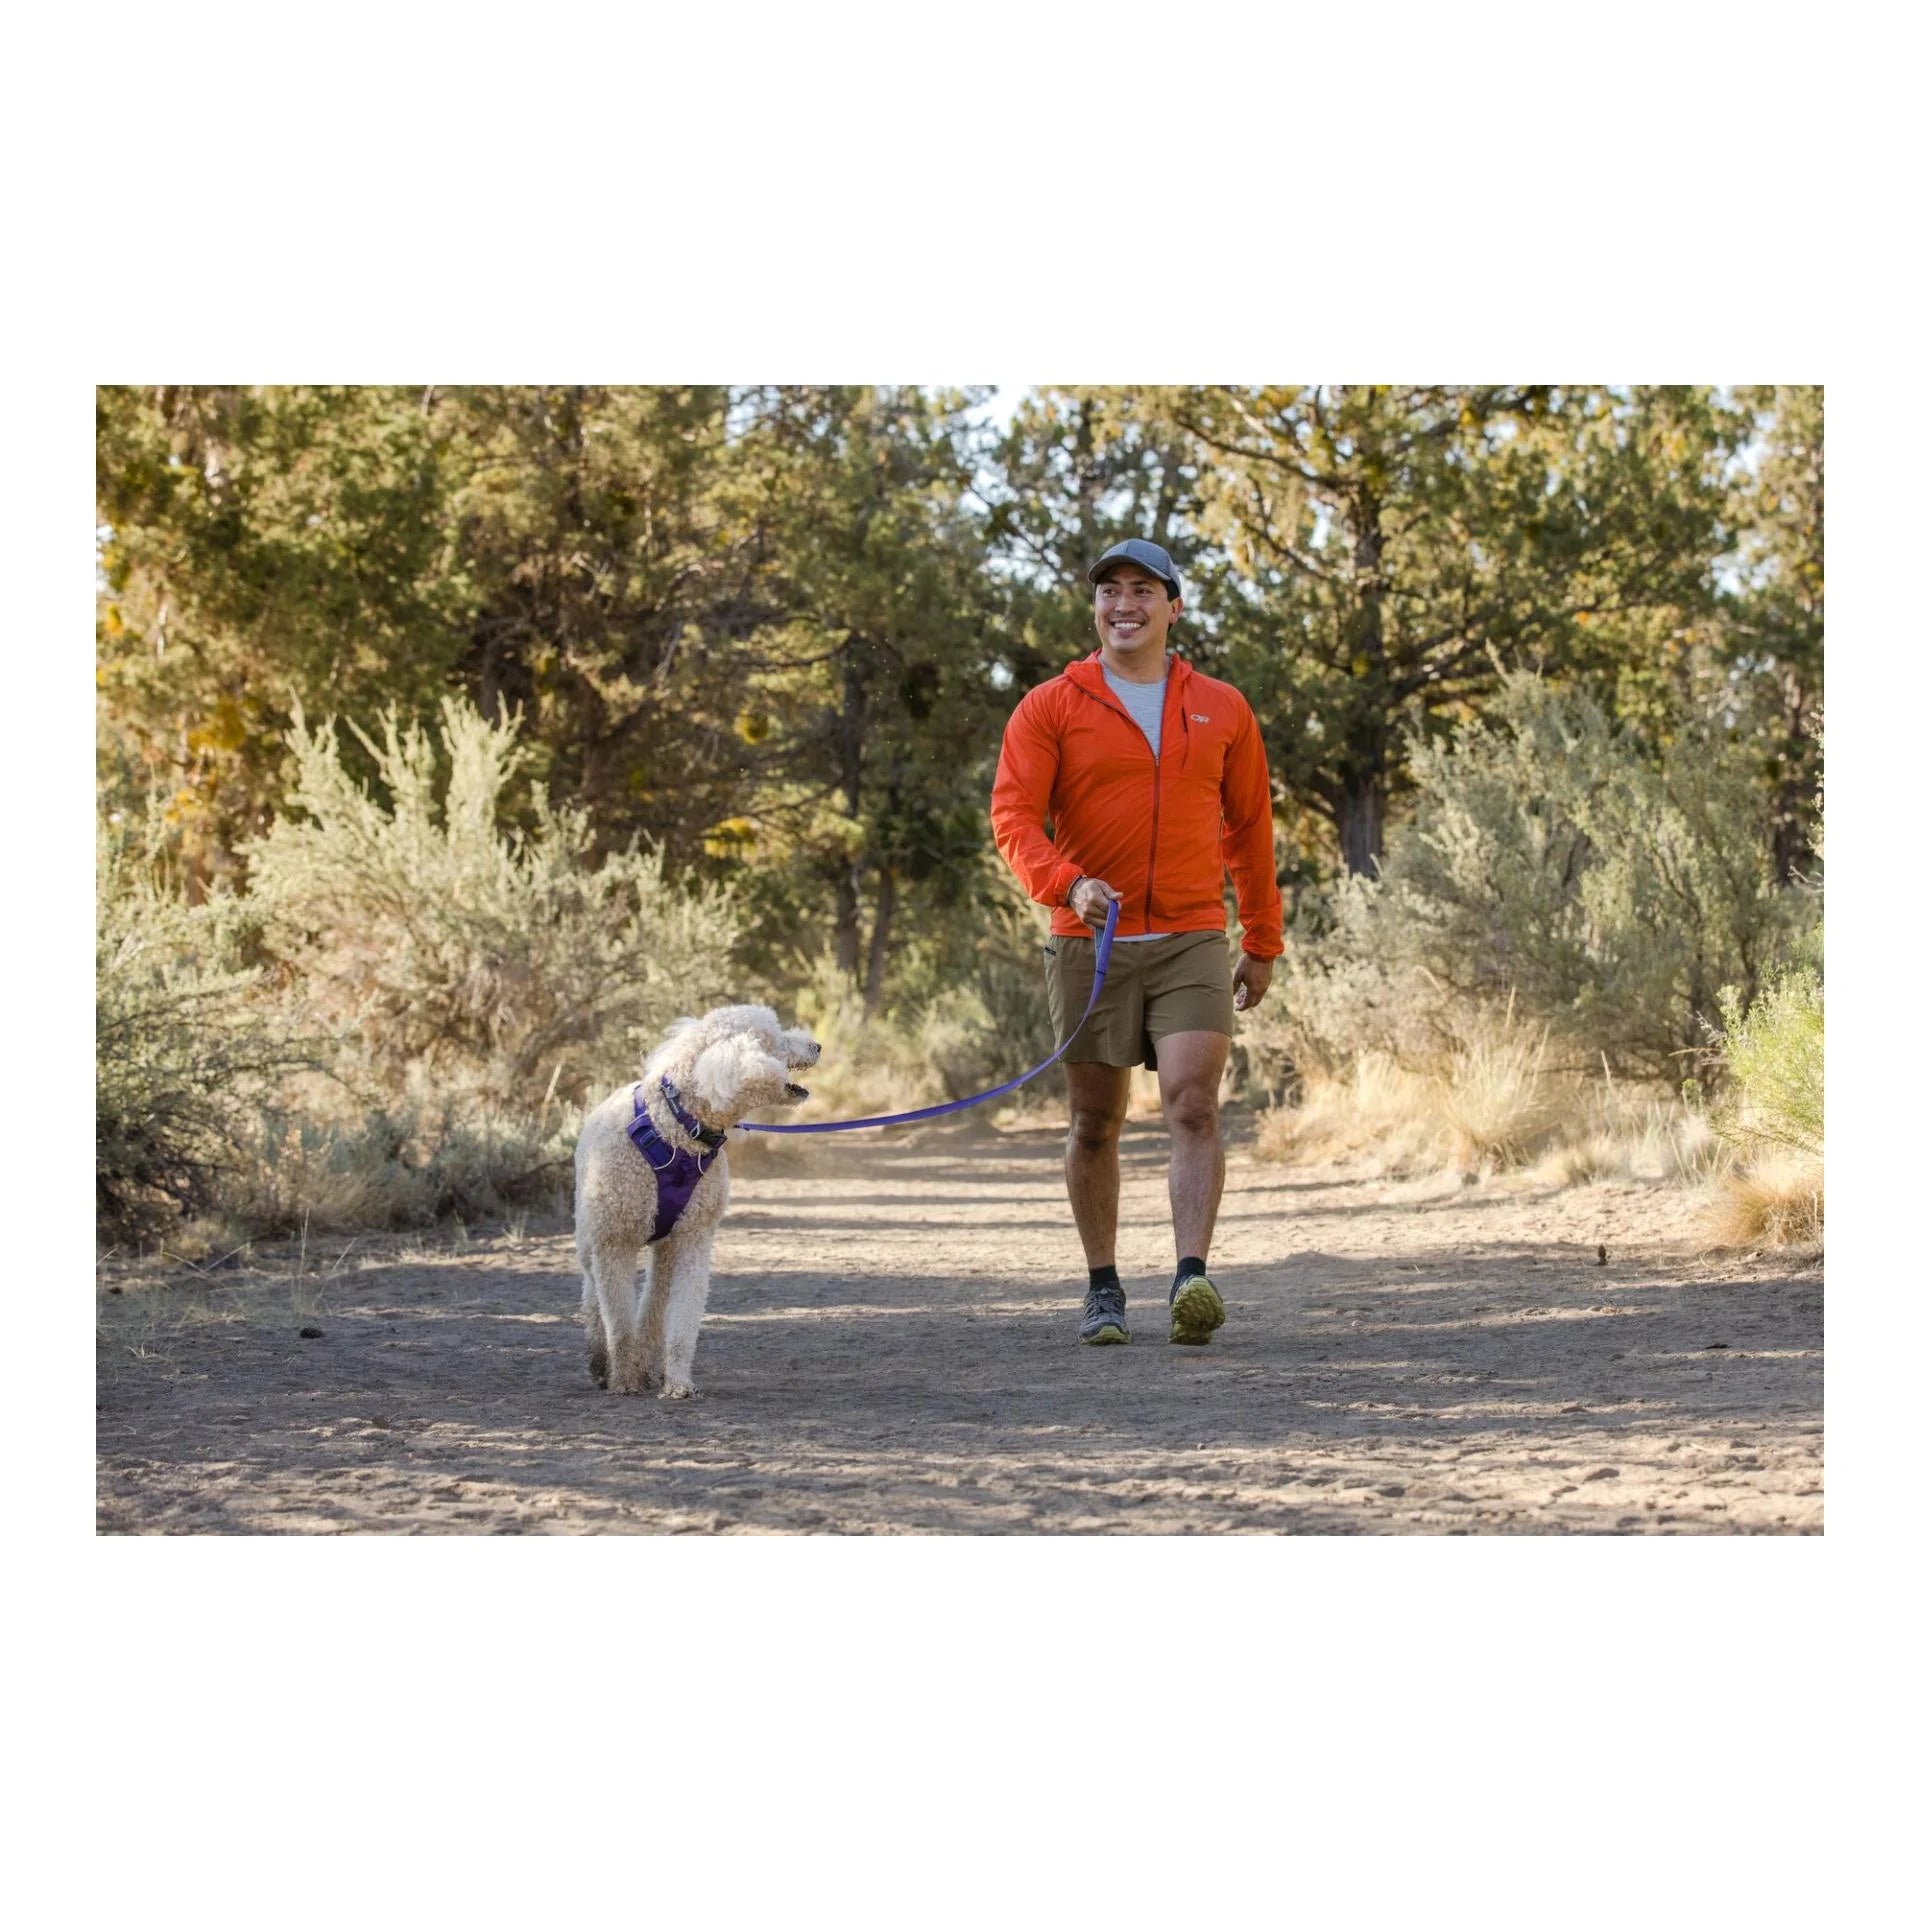 Geschirr Front Range™ - violett - athleticdog